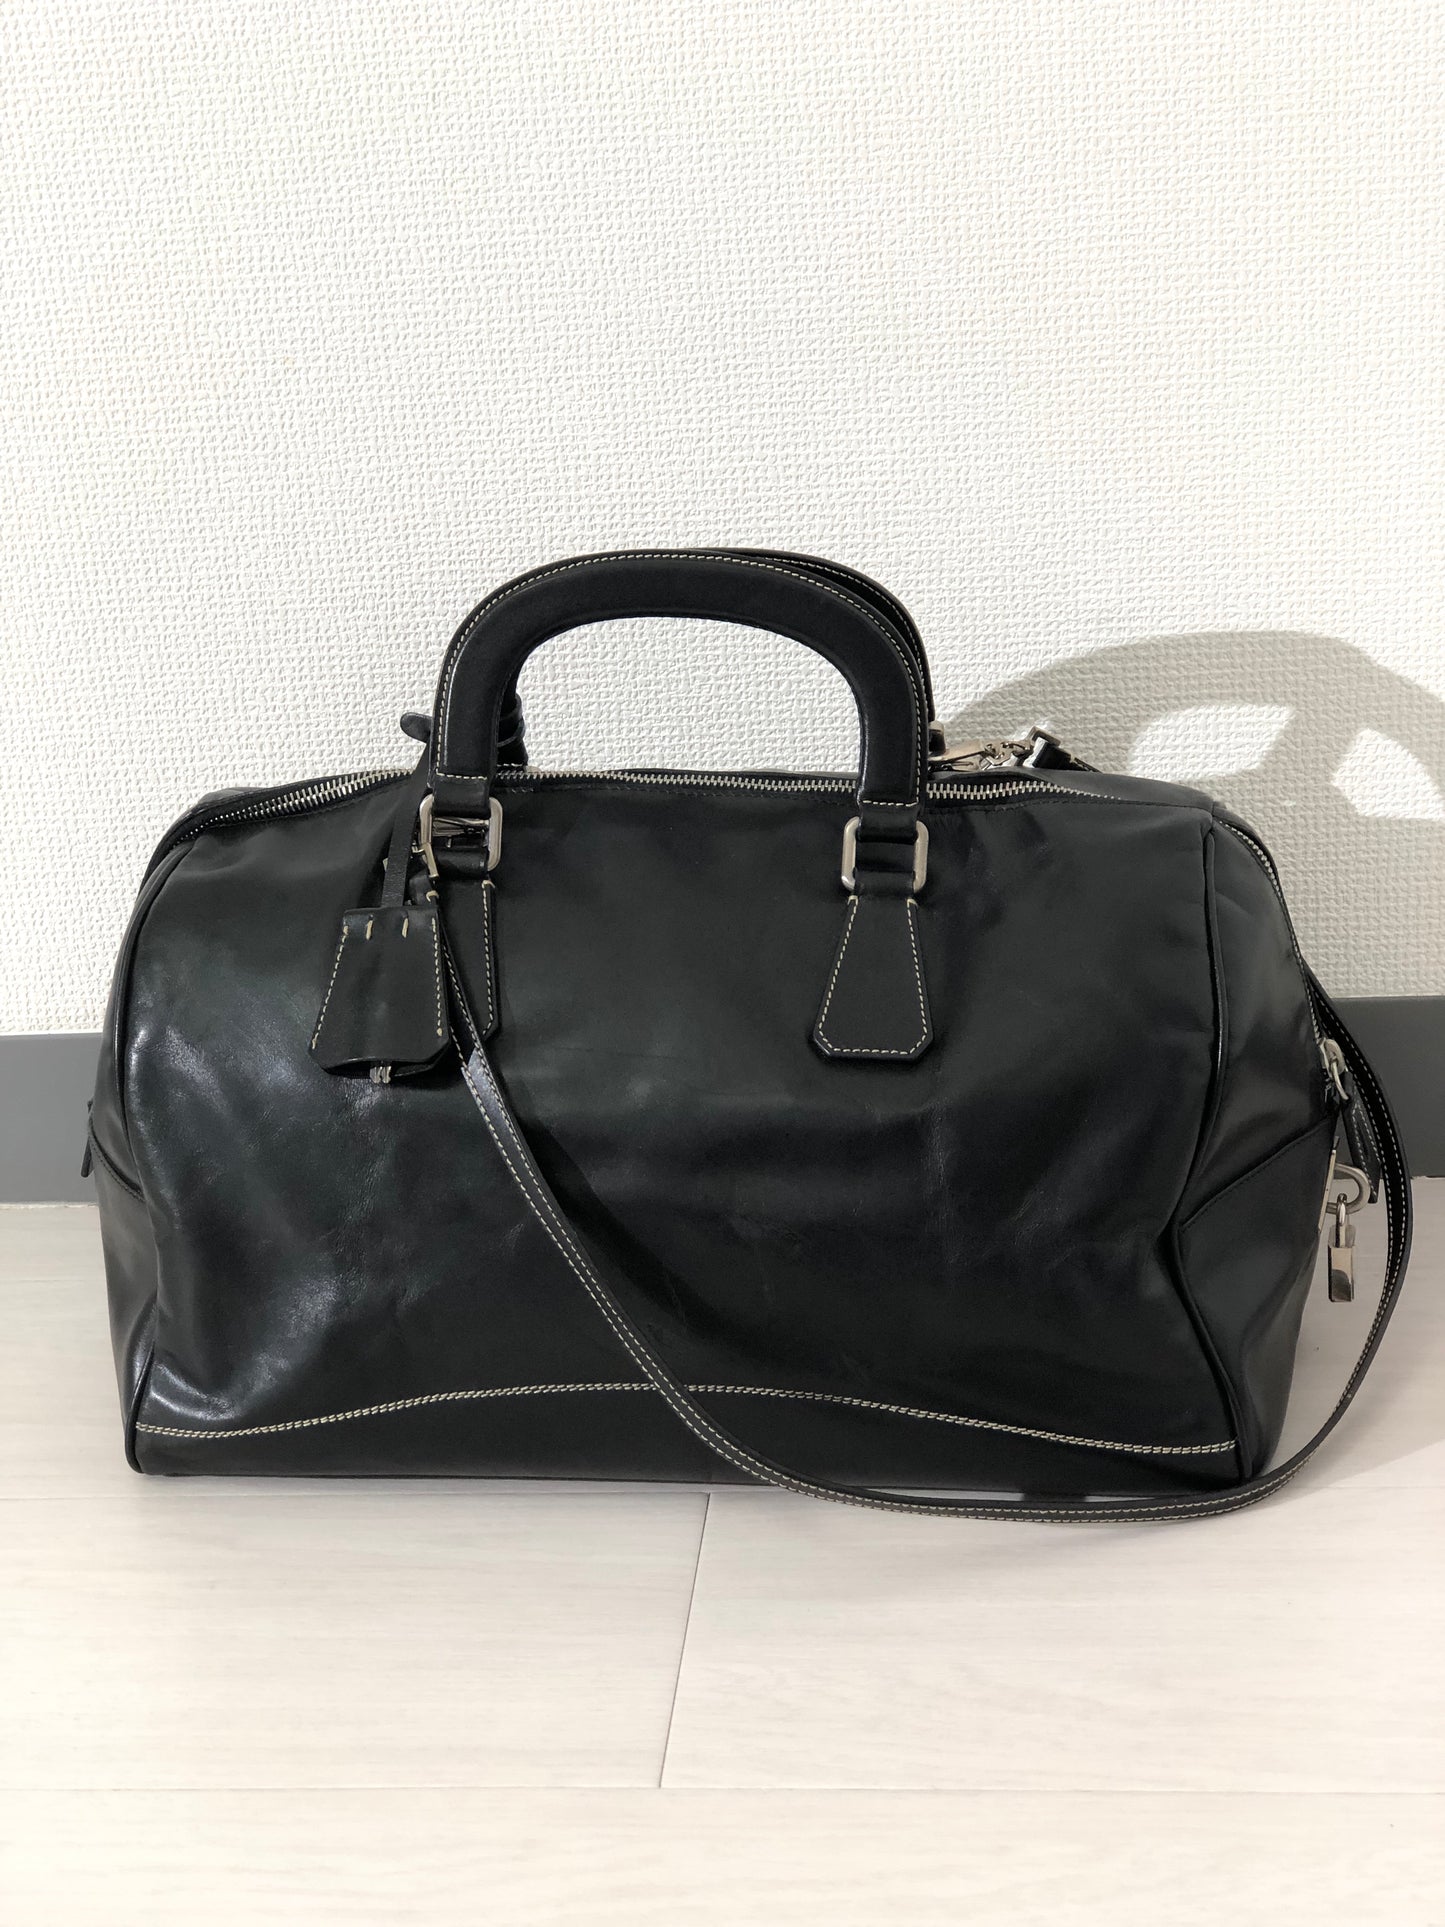 PRADA Leather Two-way Handbag Shoulder bag Boston bag Black Vintage uxvrch